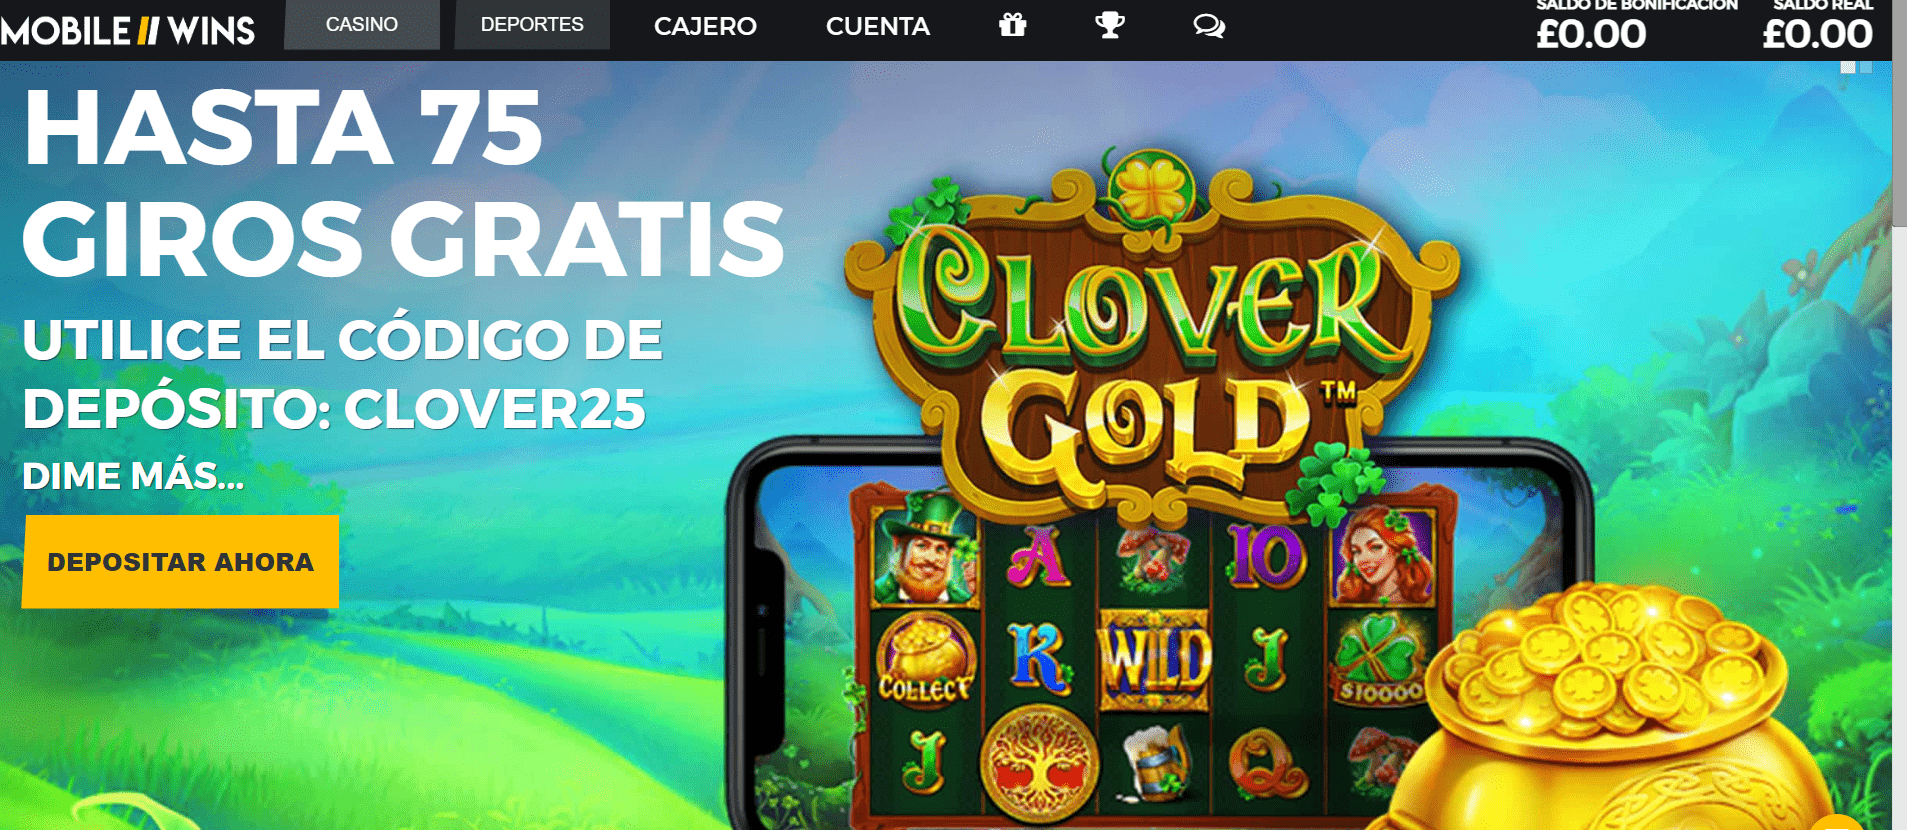 Casino en Mobile Wins Perú